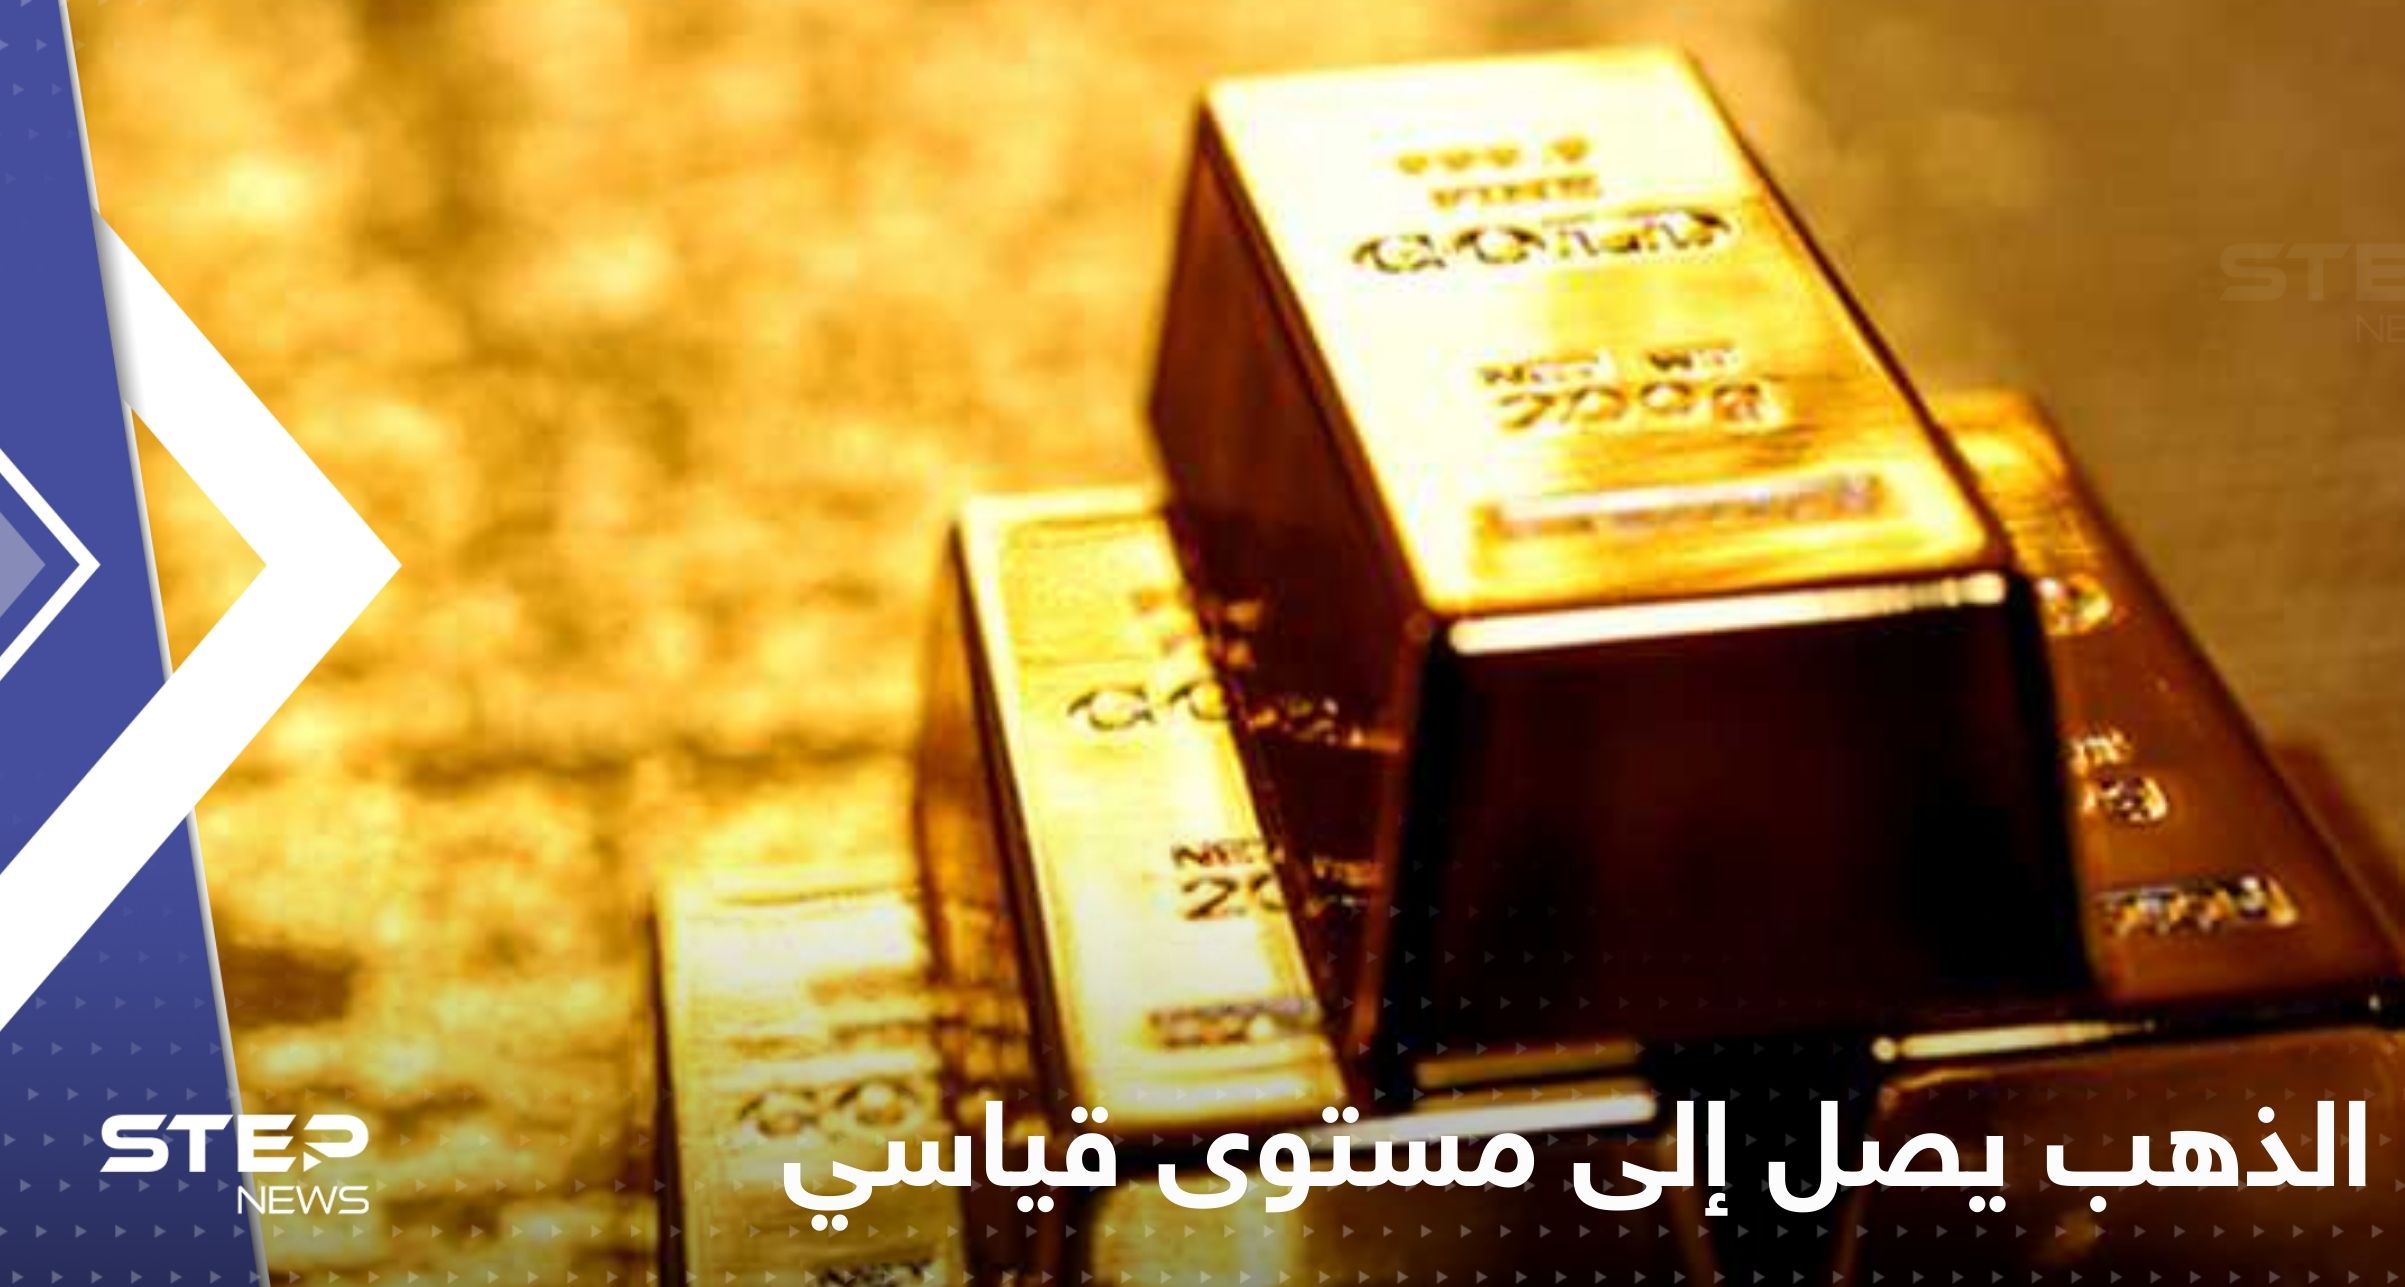 بنك سعودي يصدر بياناً بعد استحواذ "يو بي اس" على "كريدي سويس".. والذهب يصل إلى مستوى قياسي